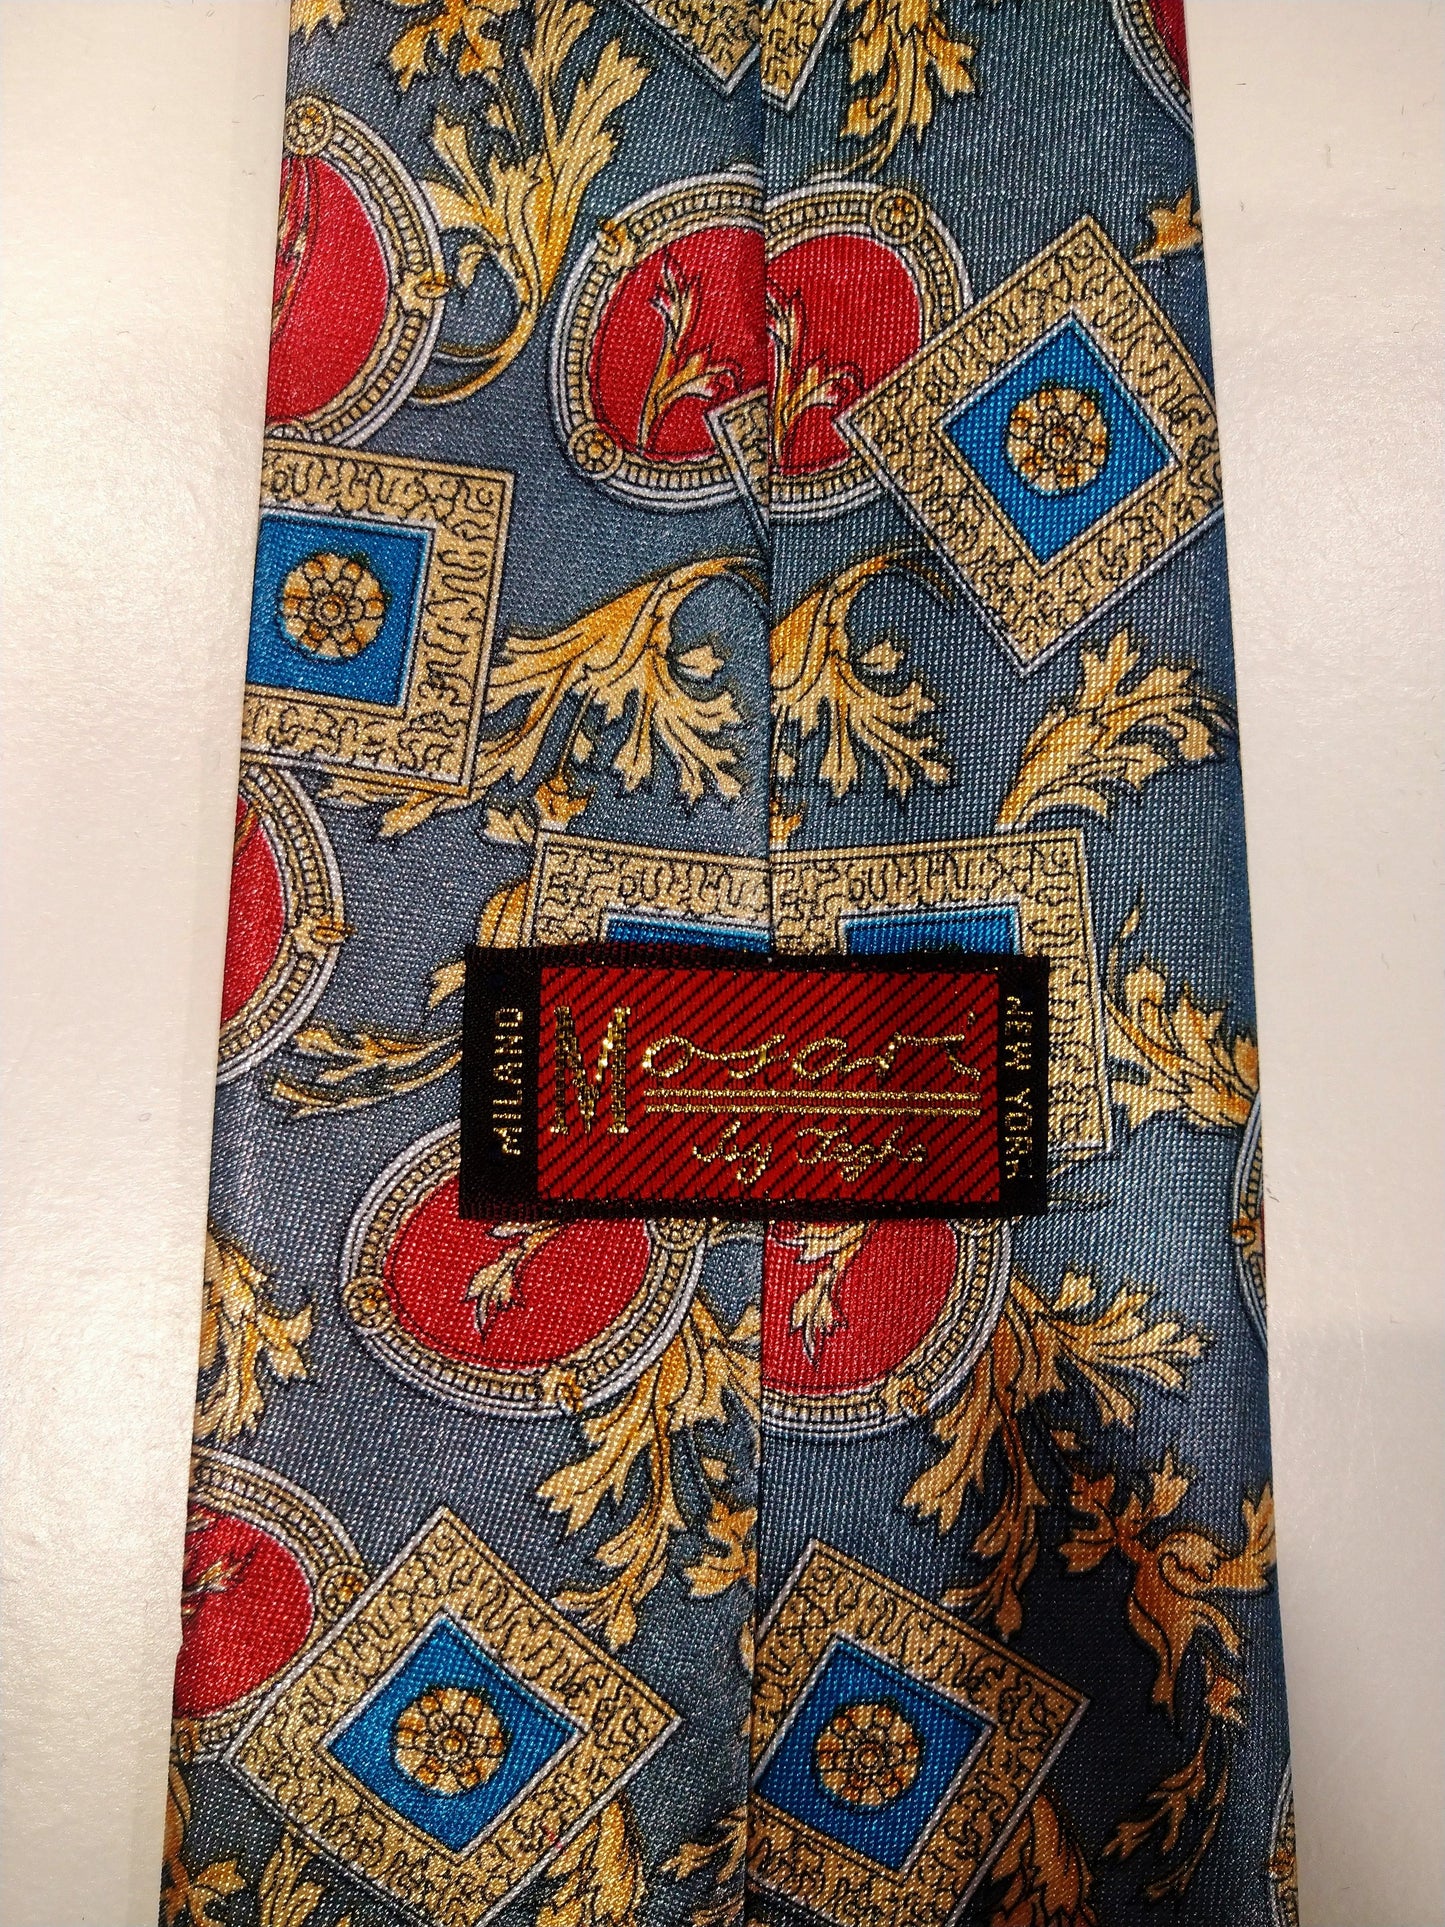 Cravatta vintage di Mosart Milano. Grigio con un bel motivo giallo, blu, rosso.